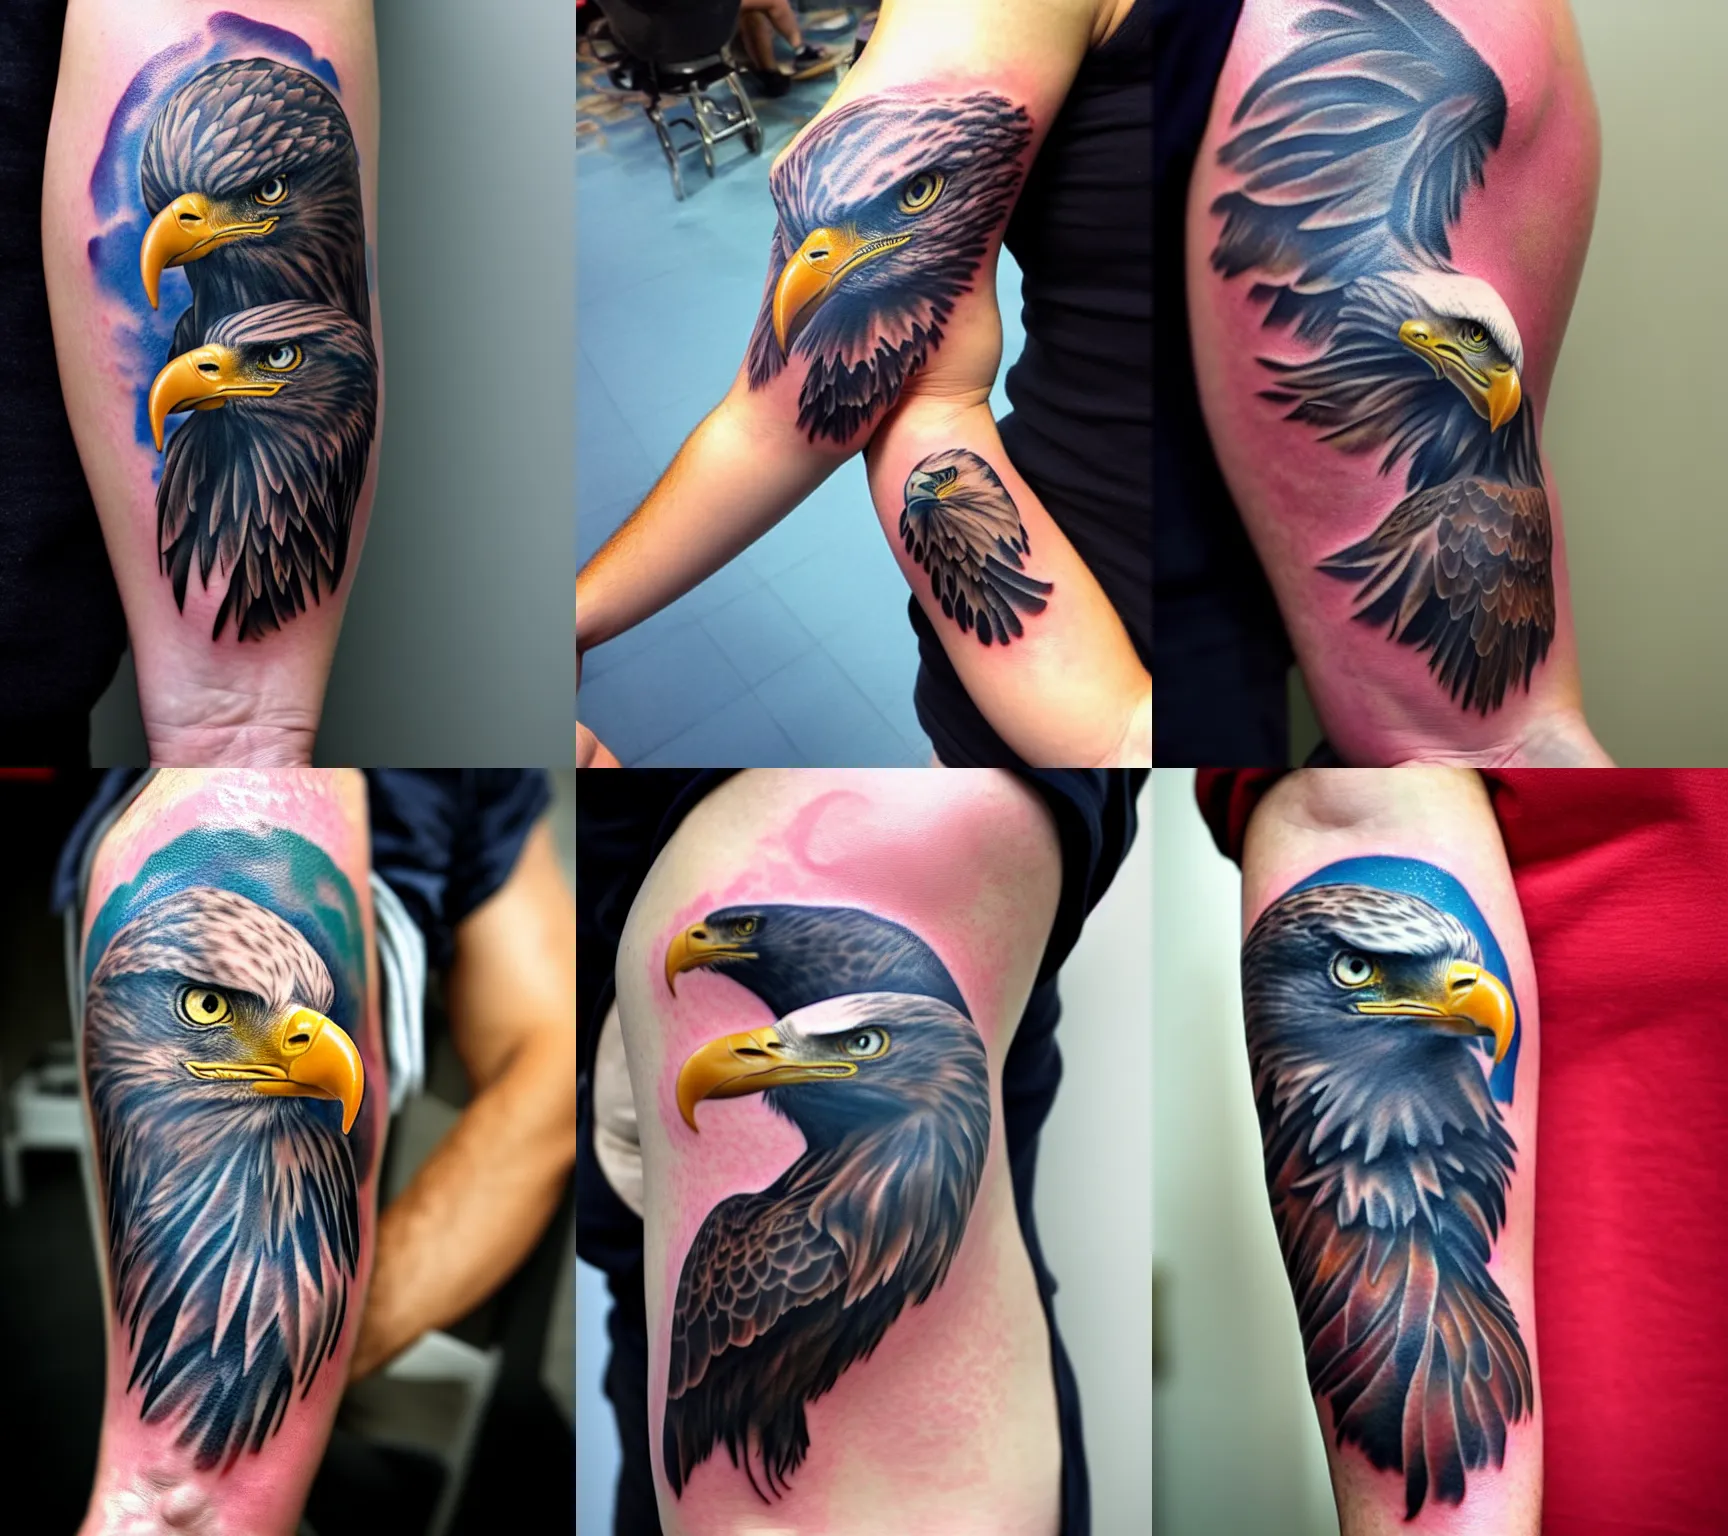 Swooping eagle tattoo design - TattooVox Professional Tattoo Designs Online